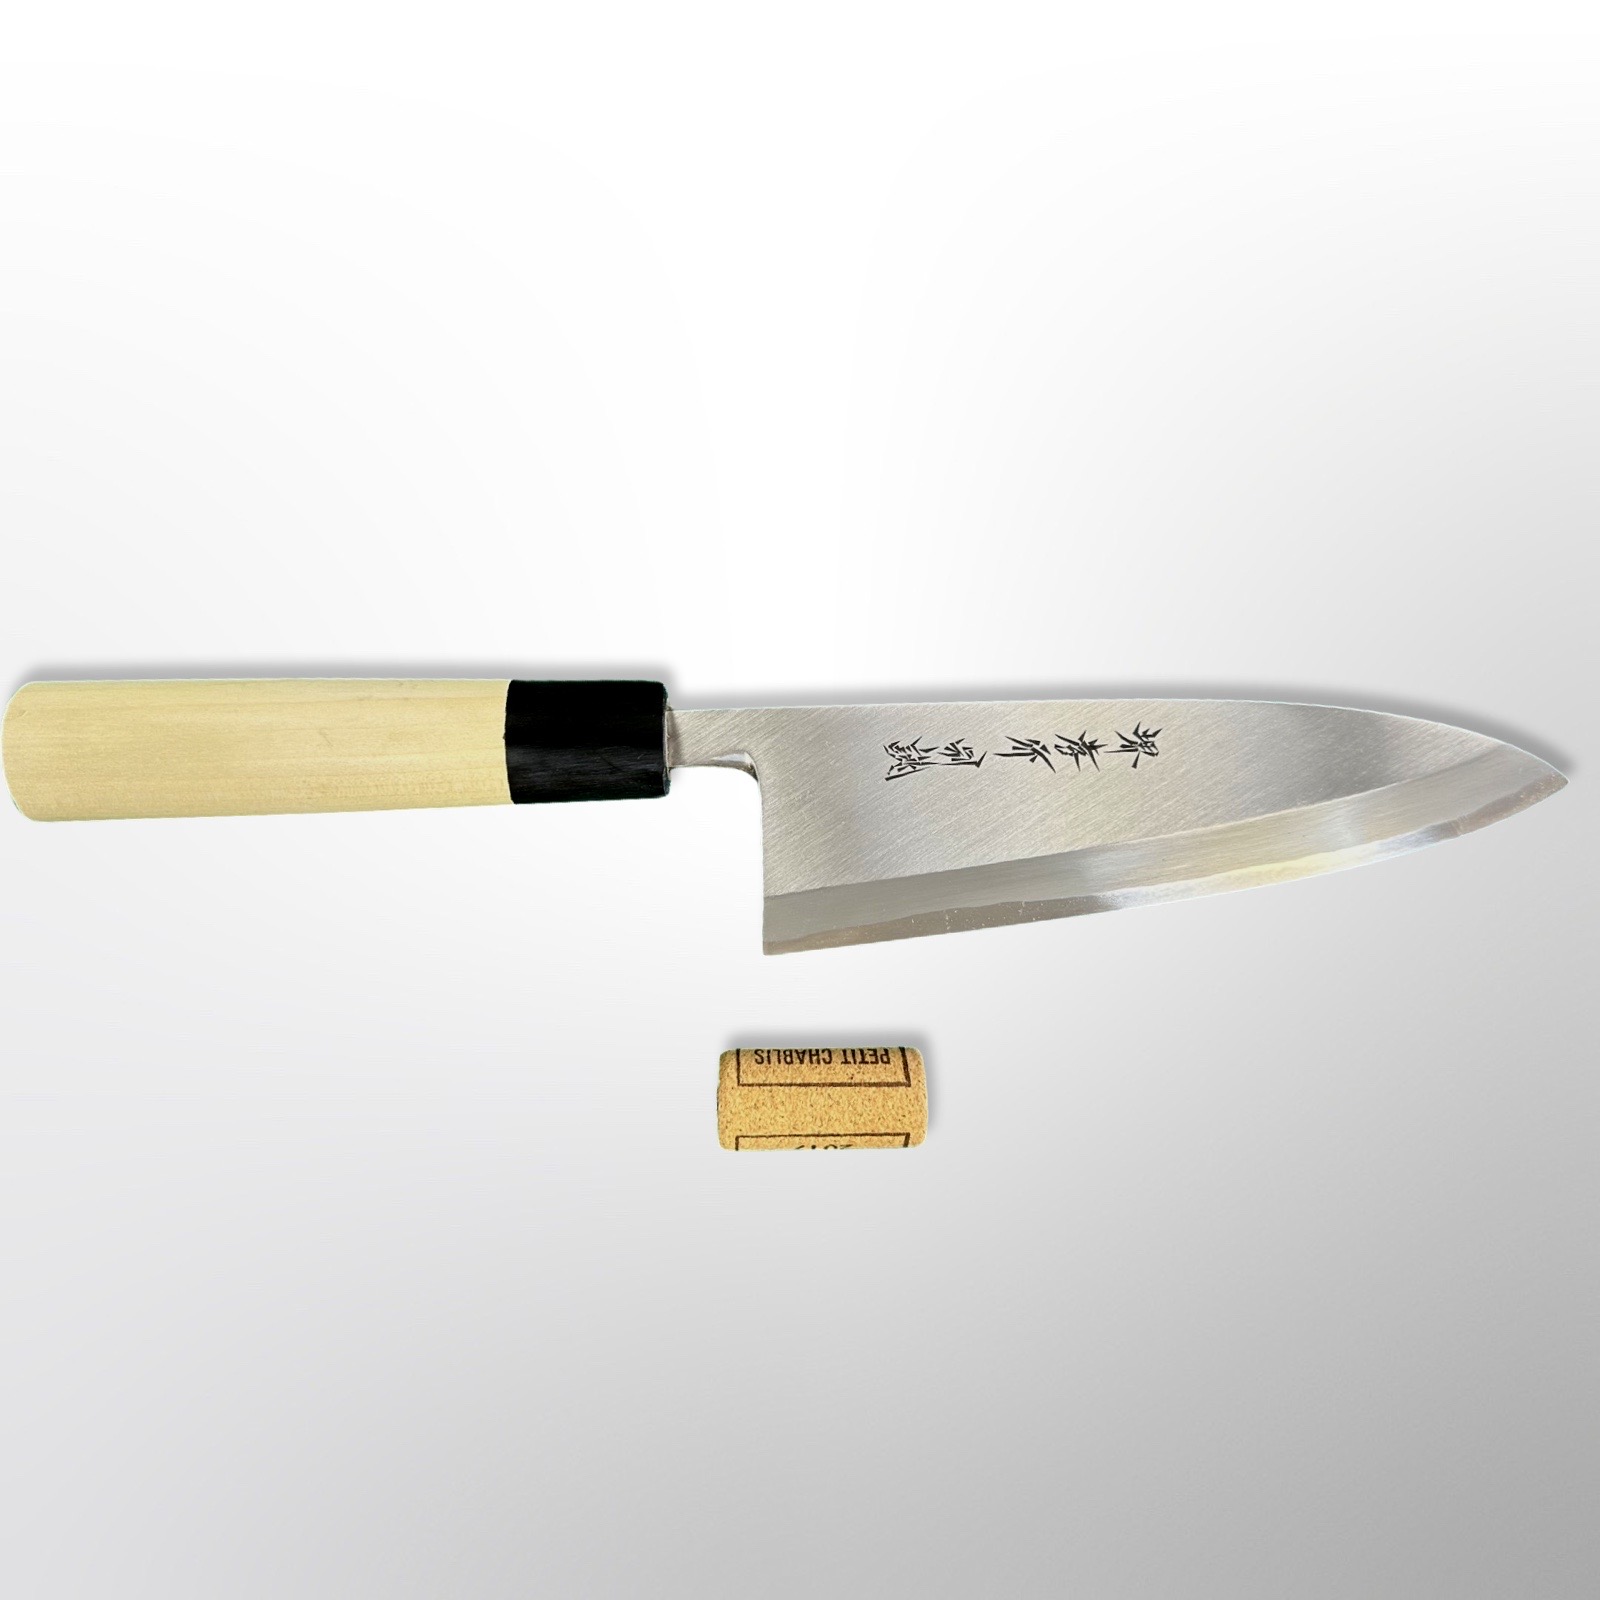 סכין פילוט דגים דֶּבָּה 195מ״מ פלדת פחמן יפנית White#2 עטופה פלדת אל-חלד גימור מט מלוטש סאקאיי טקיוקי יפן 03038